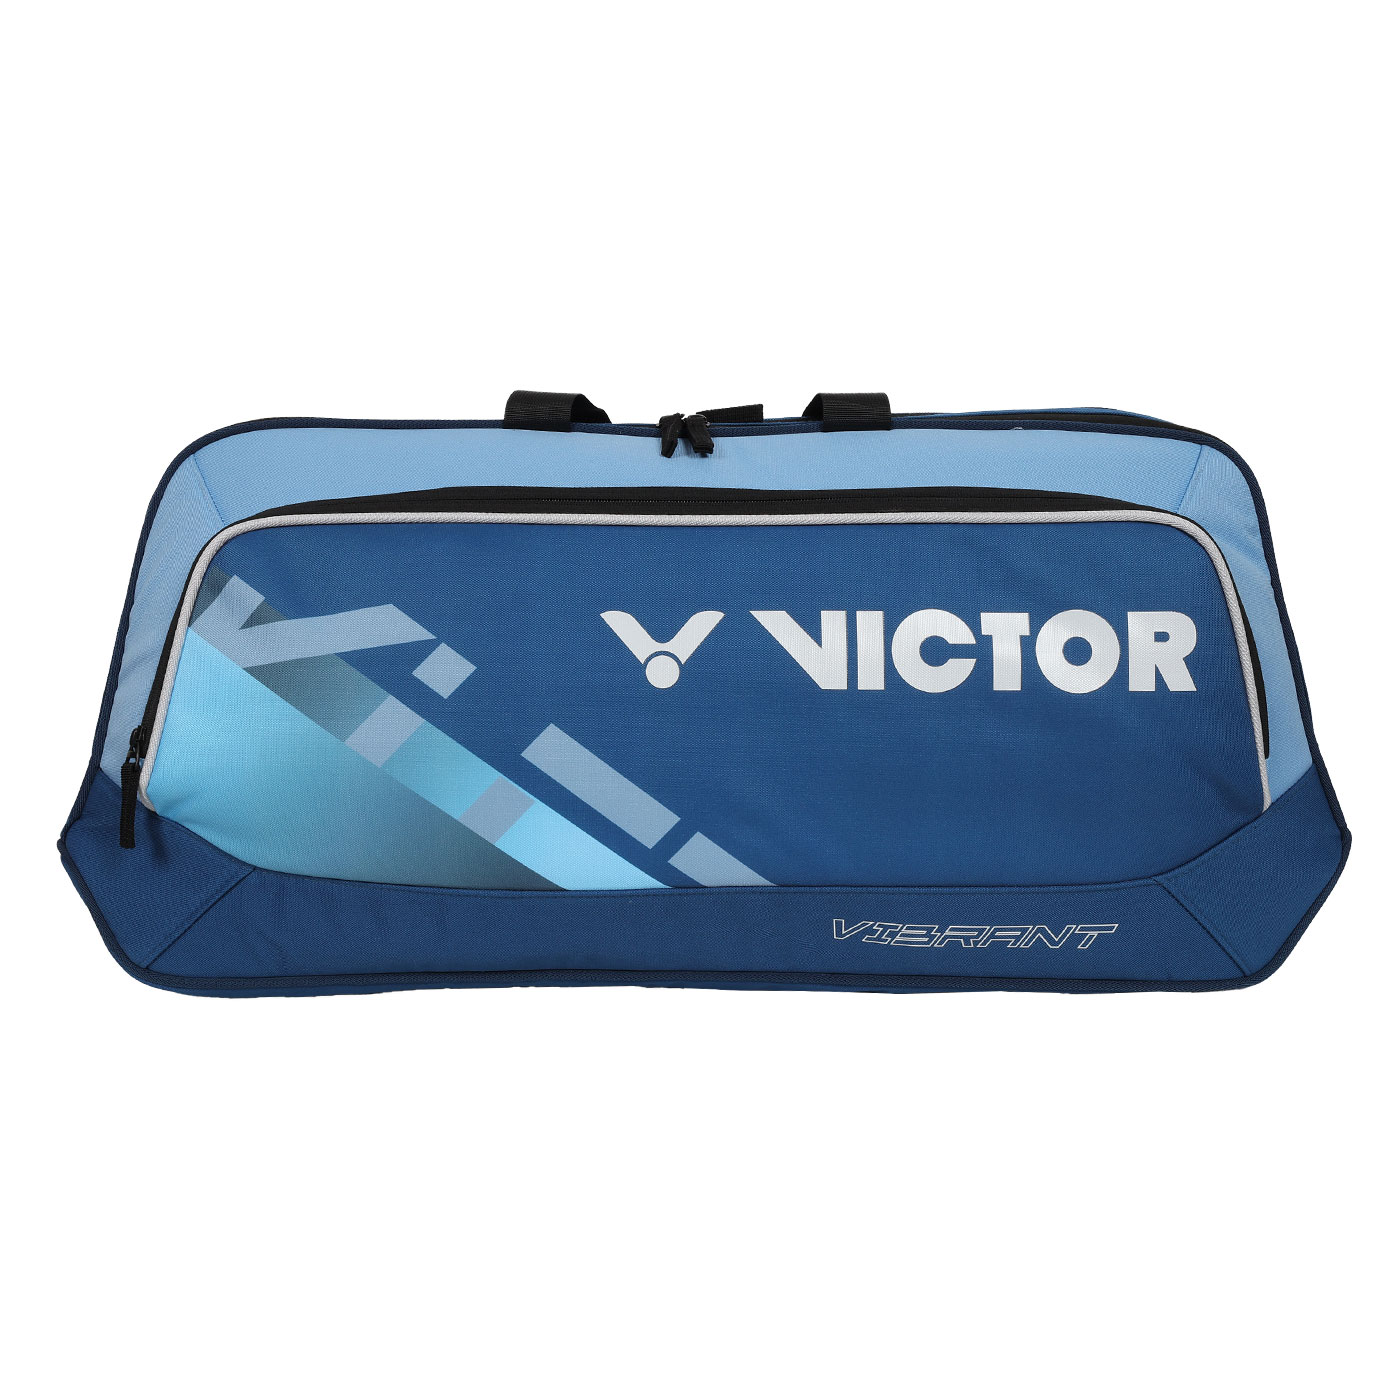 VICTOR 矩形包  BR5615FM - 墨藍水藍白